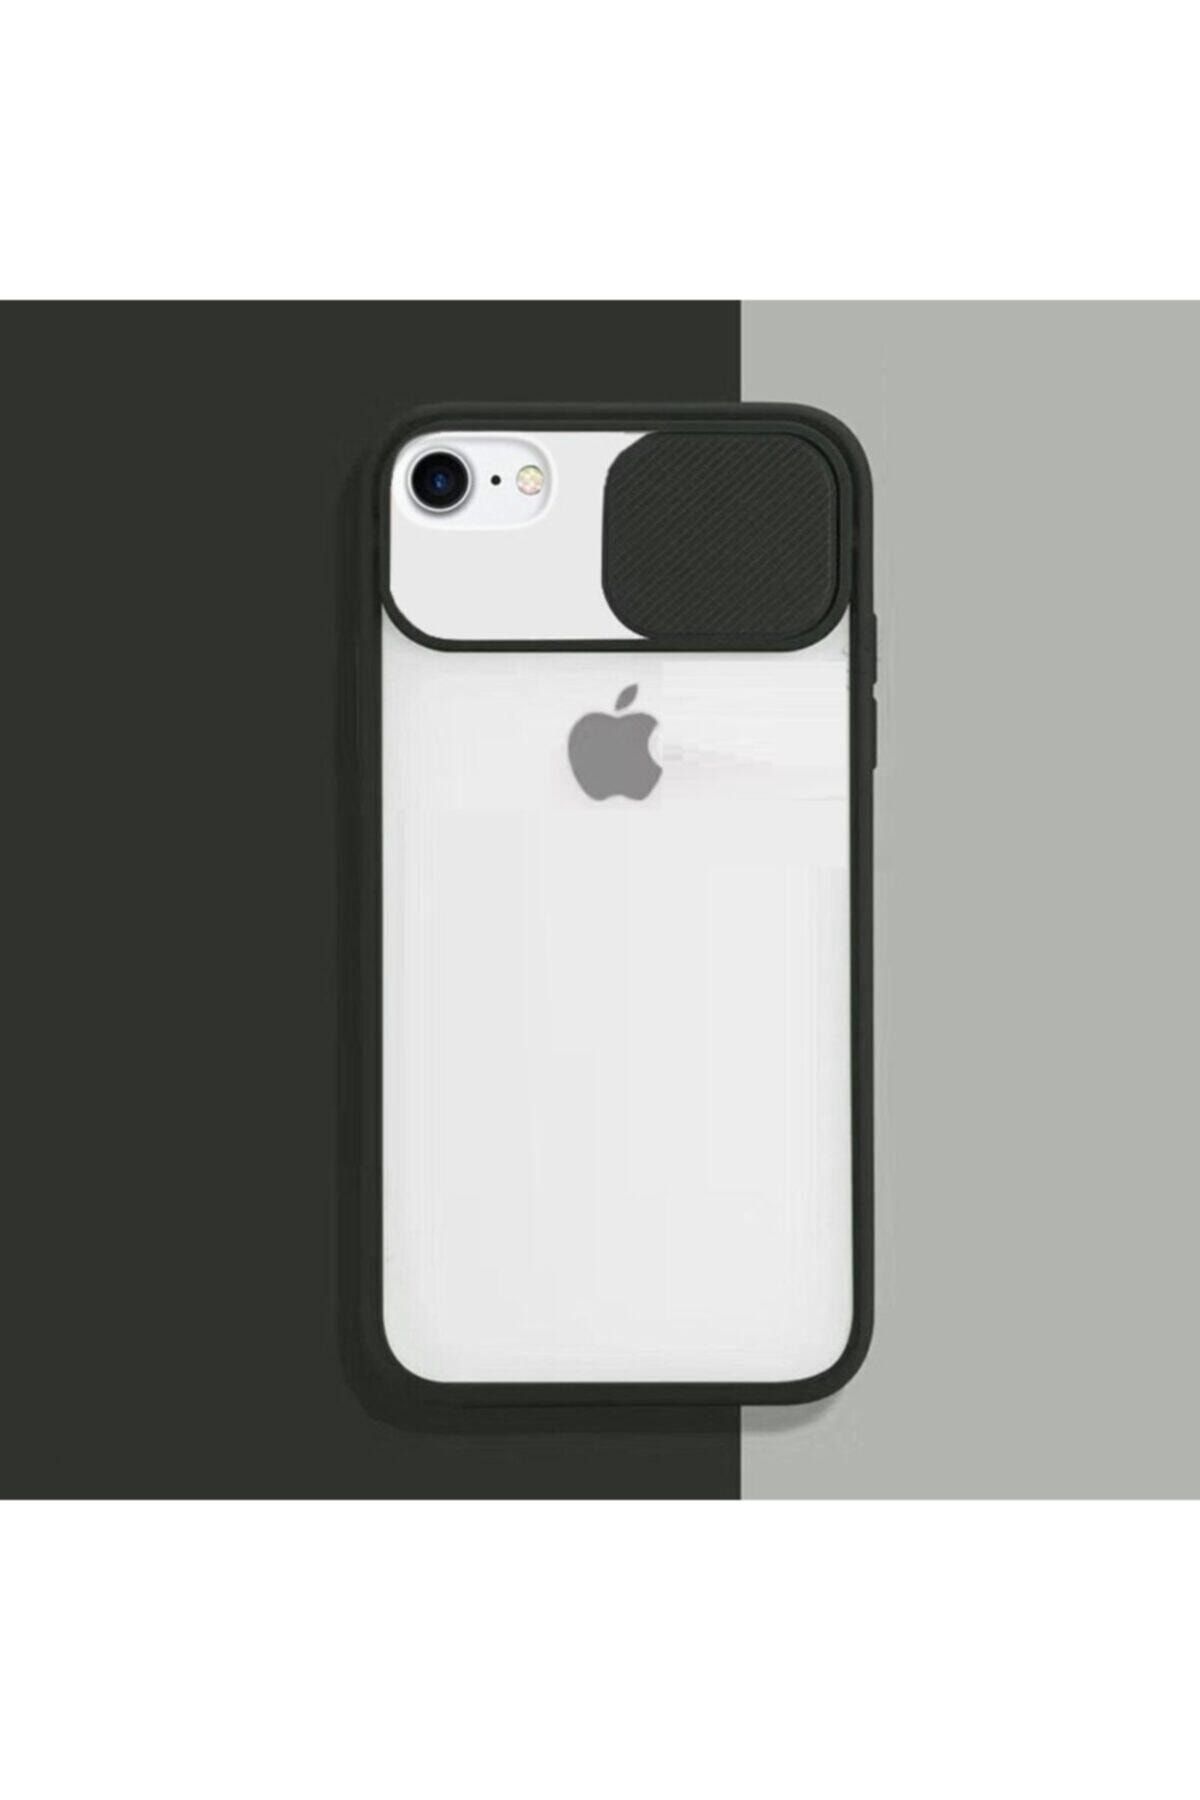 Fibaks iPhone 7 Uyumlu Kılıf Slayt Sürgülü Kamera Korumalı Renkli Silikon